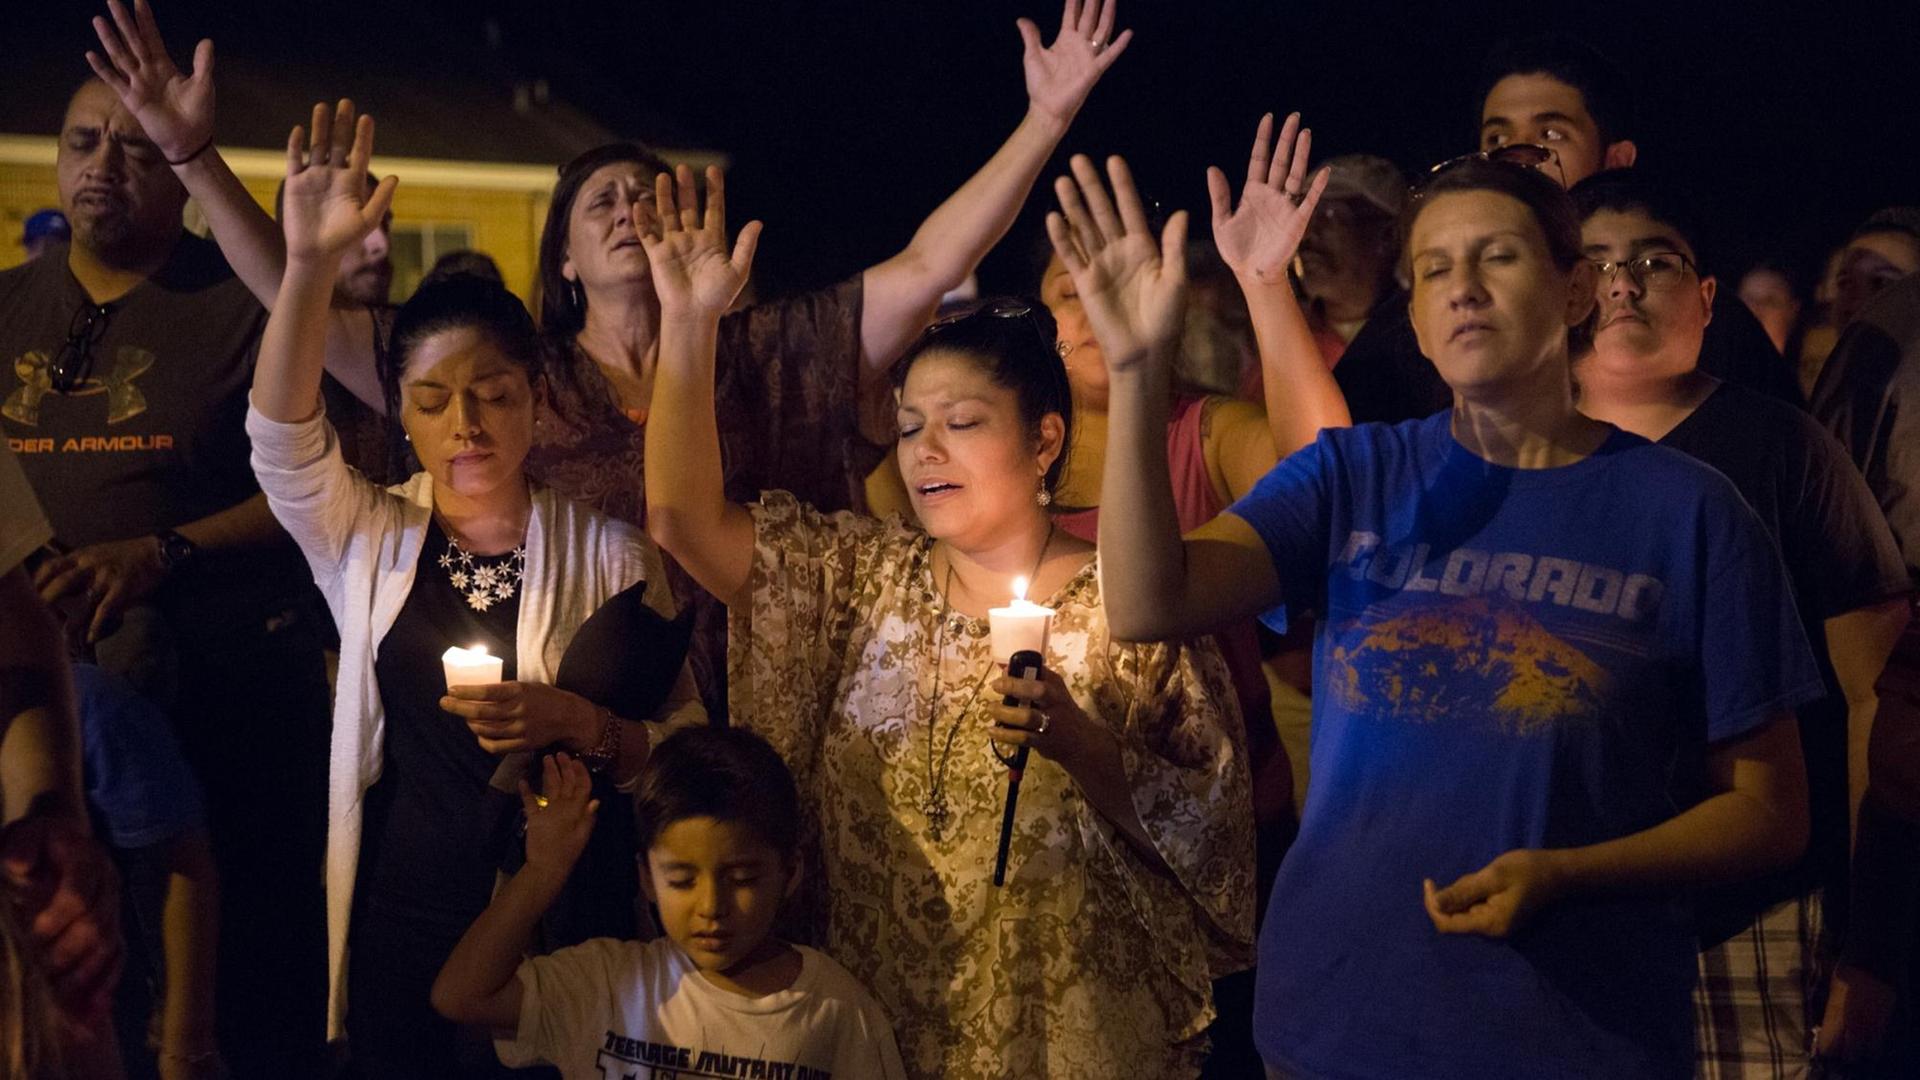 Menschen stehen am 5. November 2017 mit Kerzen in Sutherland Springs, Texas und gedenken den Getöteten. Ein Mann hat während eines Gottesdienstes in einer Kirche das Feuer auf Gläubige eröffnet und 26 Menschen ermordet.